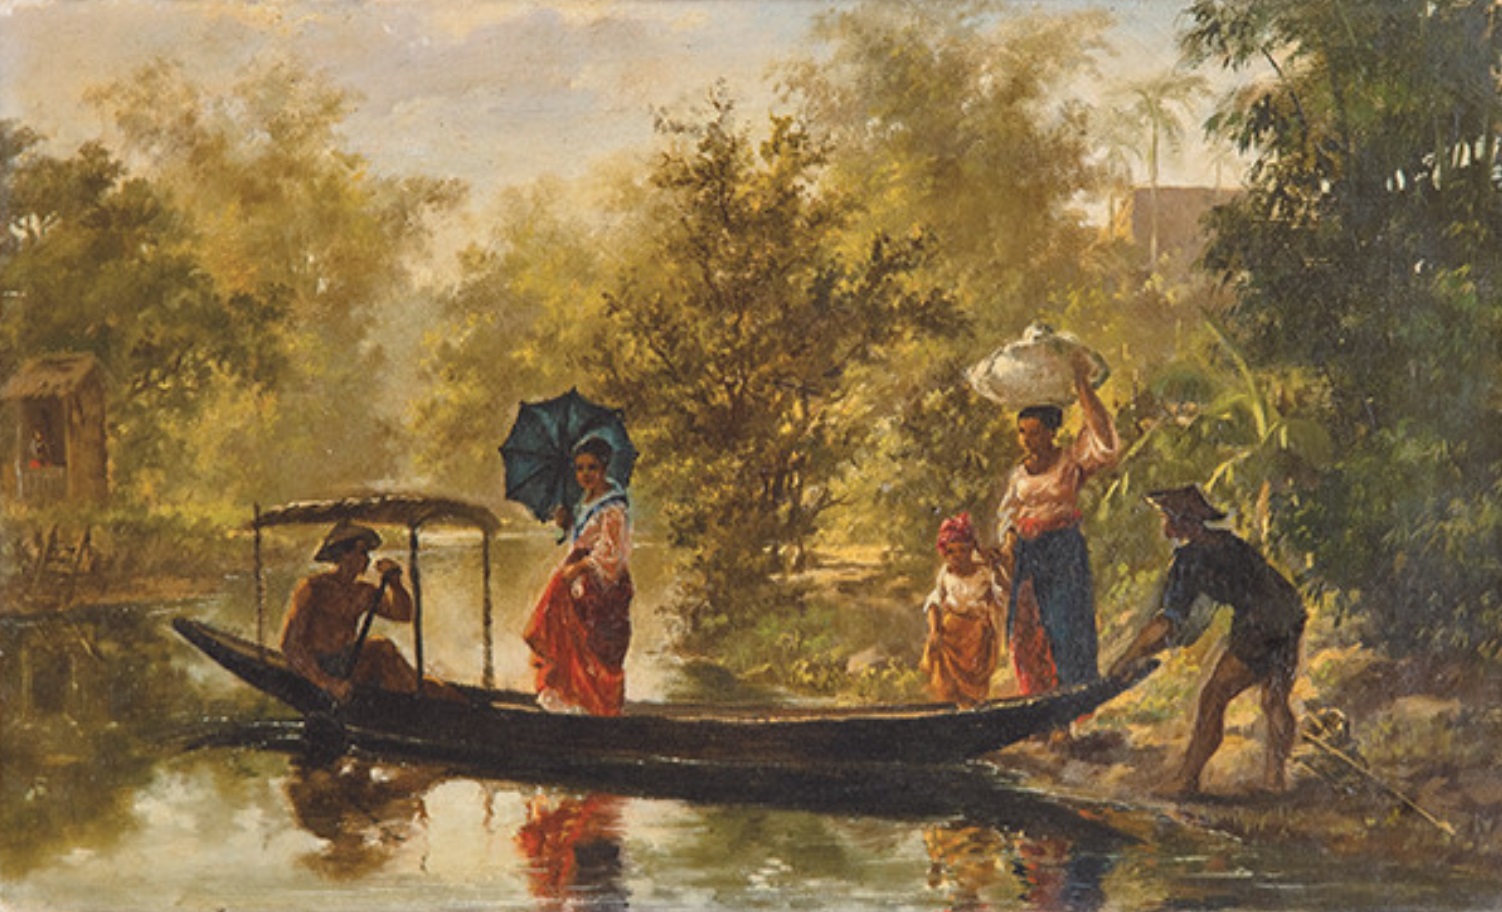 Atribuido a Félix Resurrección Hidalgo, Personajes filipinos en una barca, c. 1876. Salida: 20.000 euros. Remate: 95.000 euros